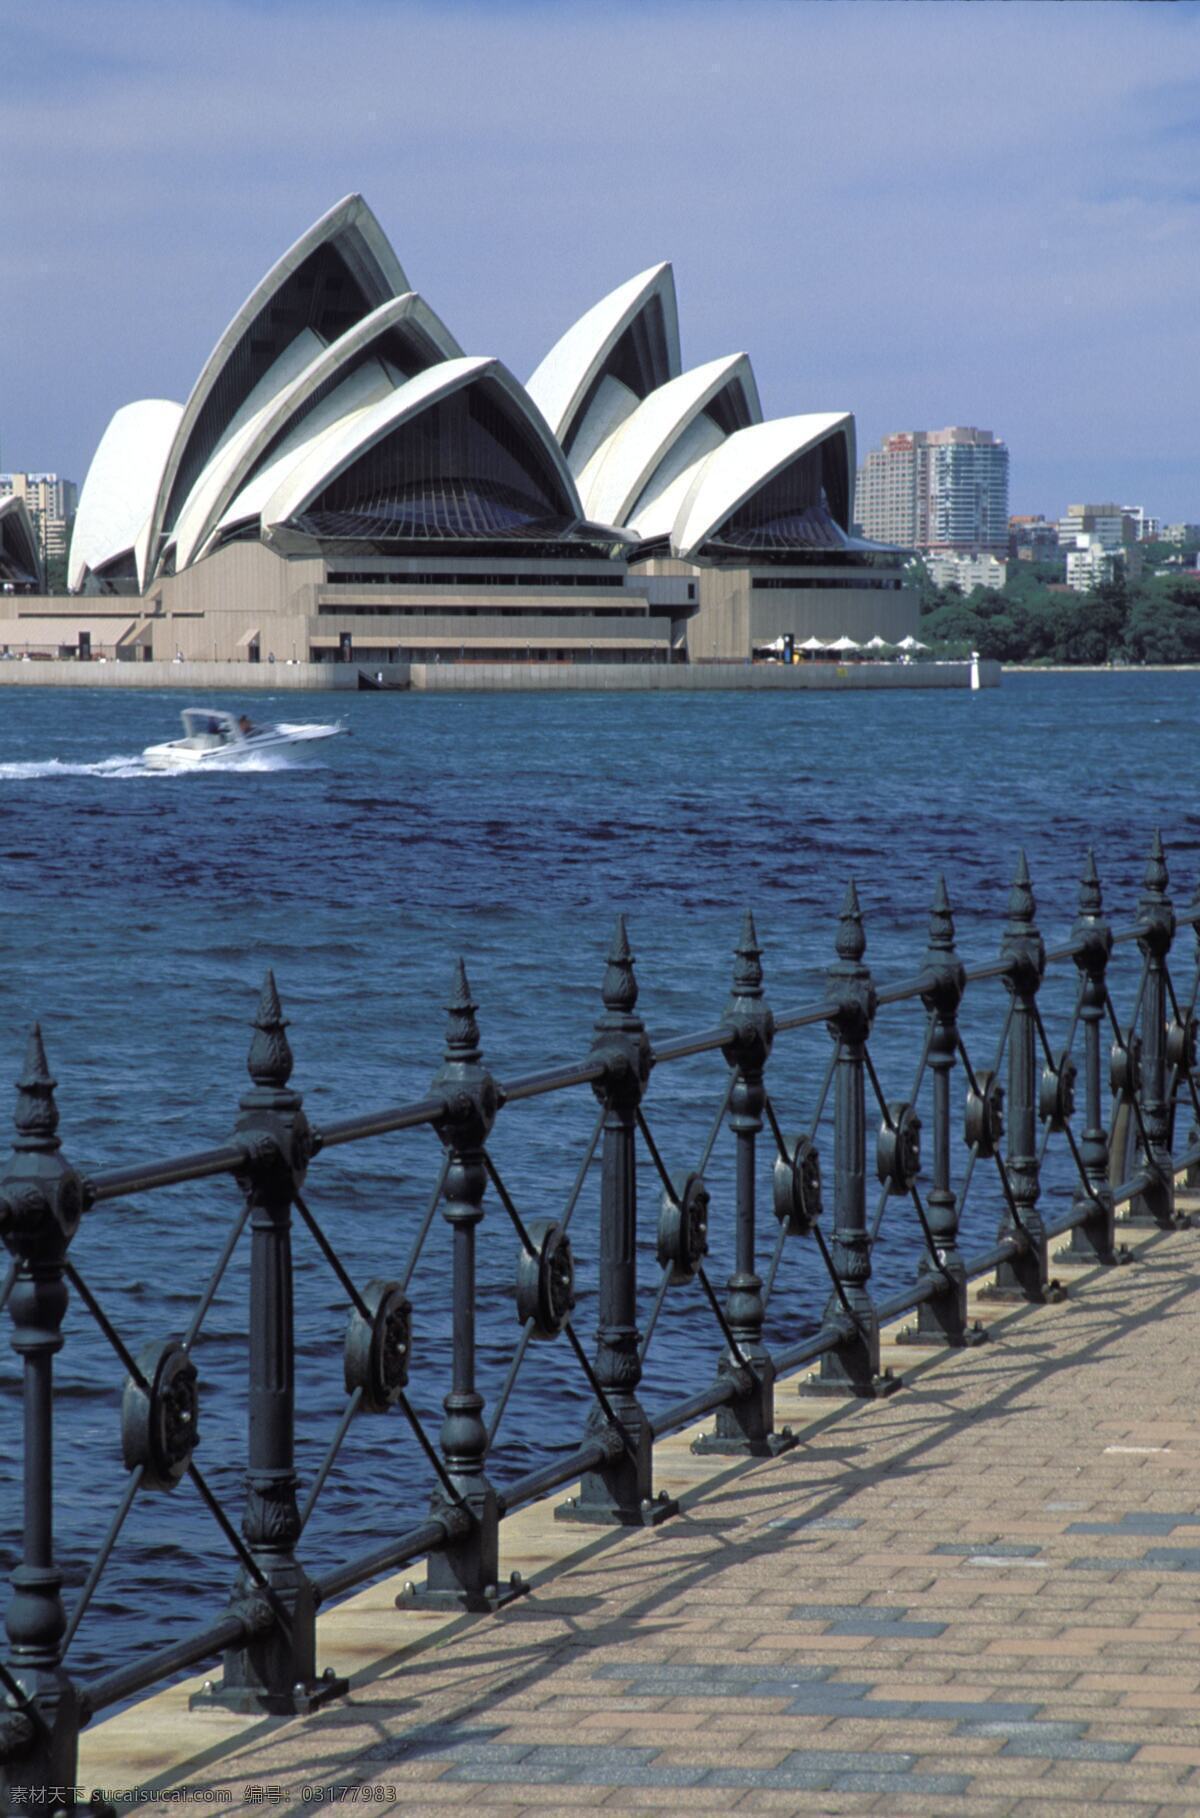 悉尼歌剧院 悉尼 歌剧院 剧院 海边 大海 栏杆 围栏 风景 名胜 国外旅游 旅游摄影